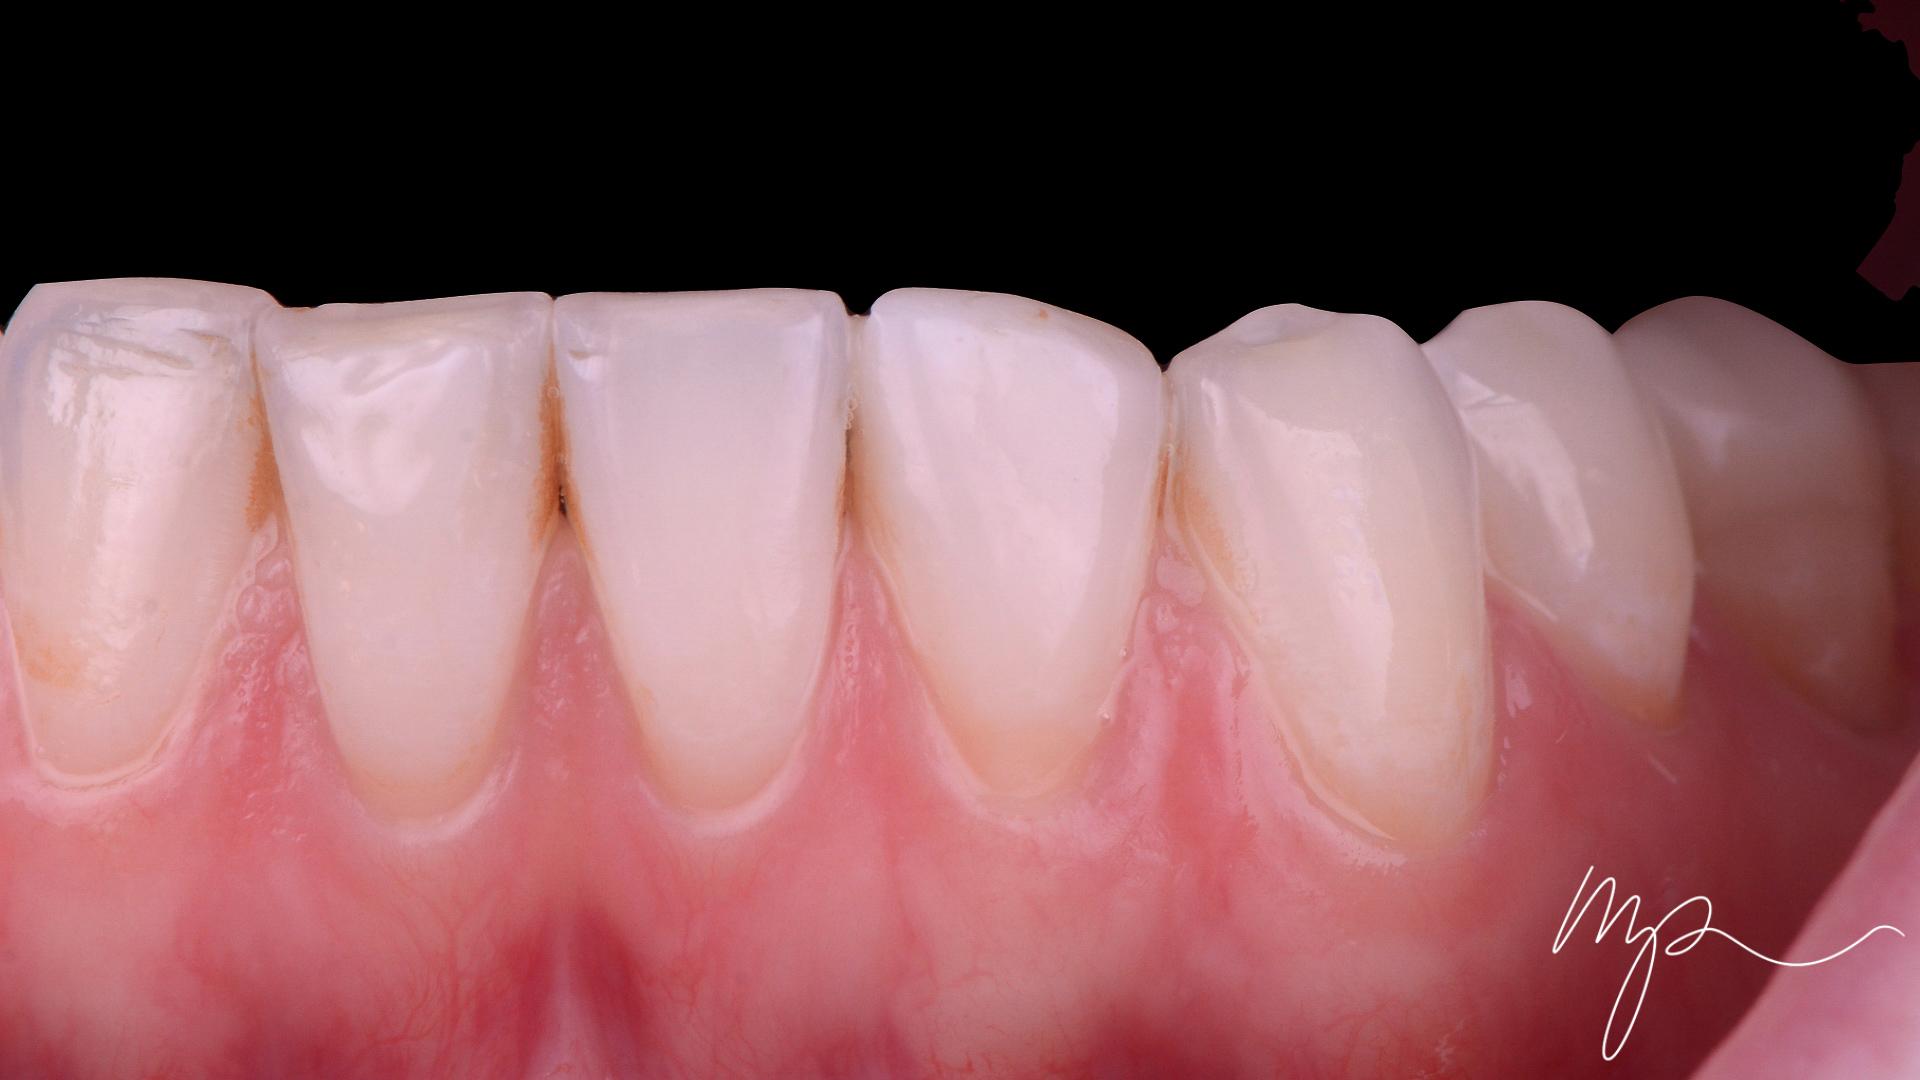 Dr Marin Pomperski - Chirurgien Dentiste - composites Apres